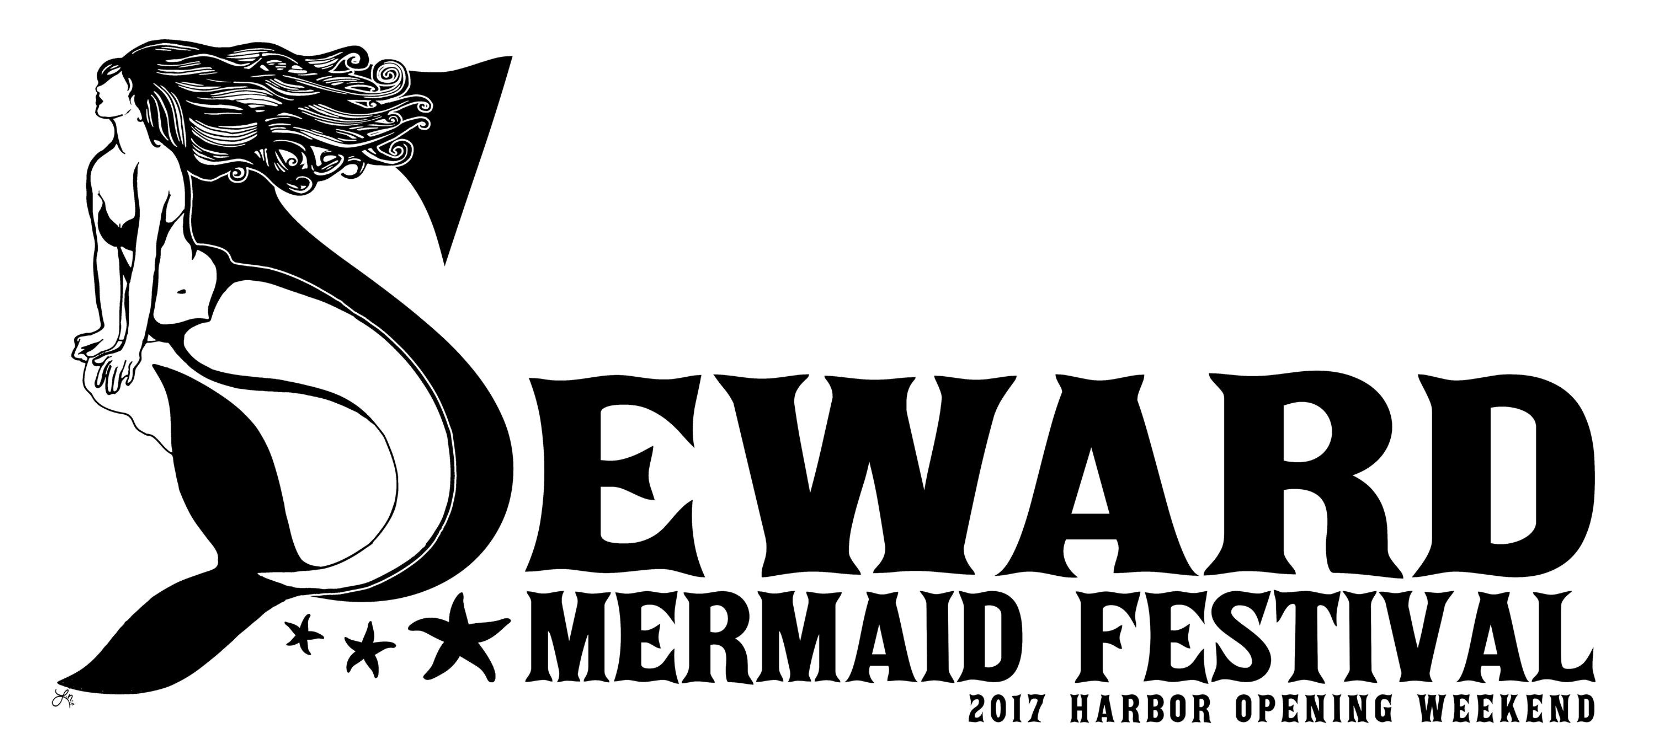 2023 Seward Mermaid Festival and Harbor Opening Weekend